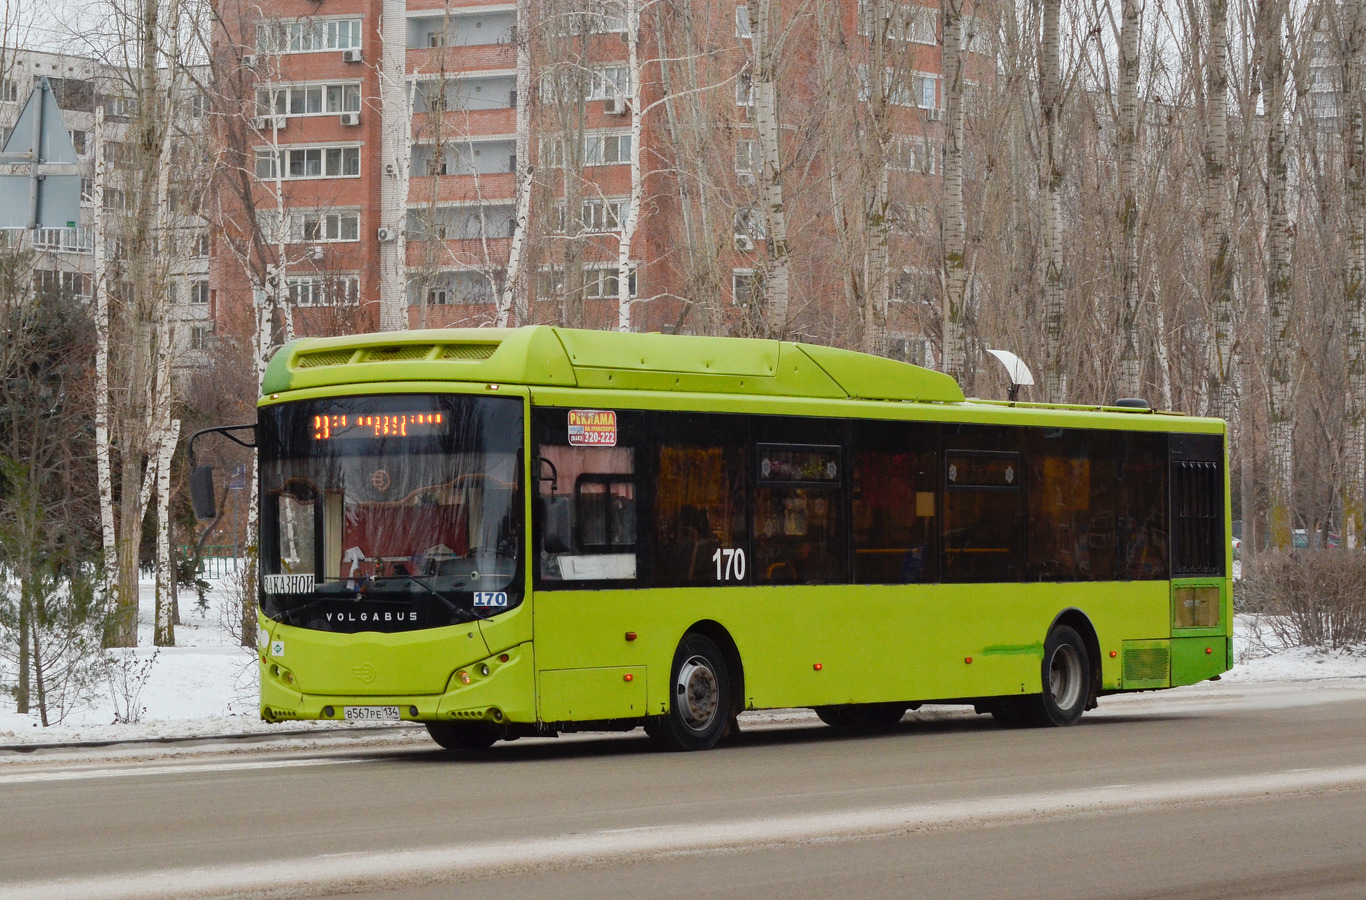 Volgograd region, Volgabus-5270.G2 (CNG) # 170